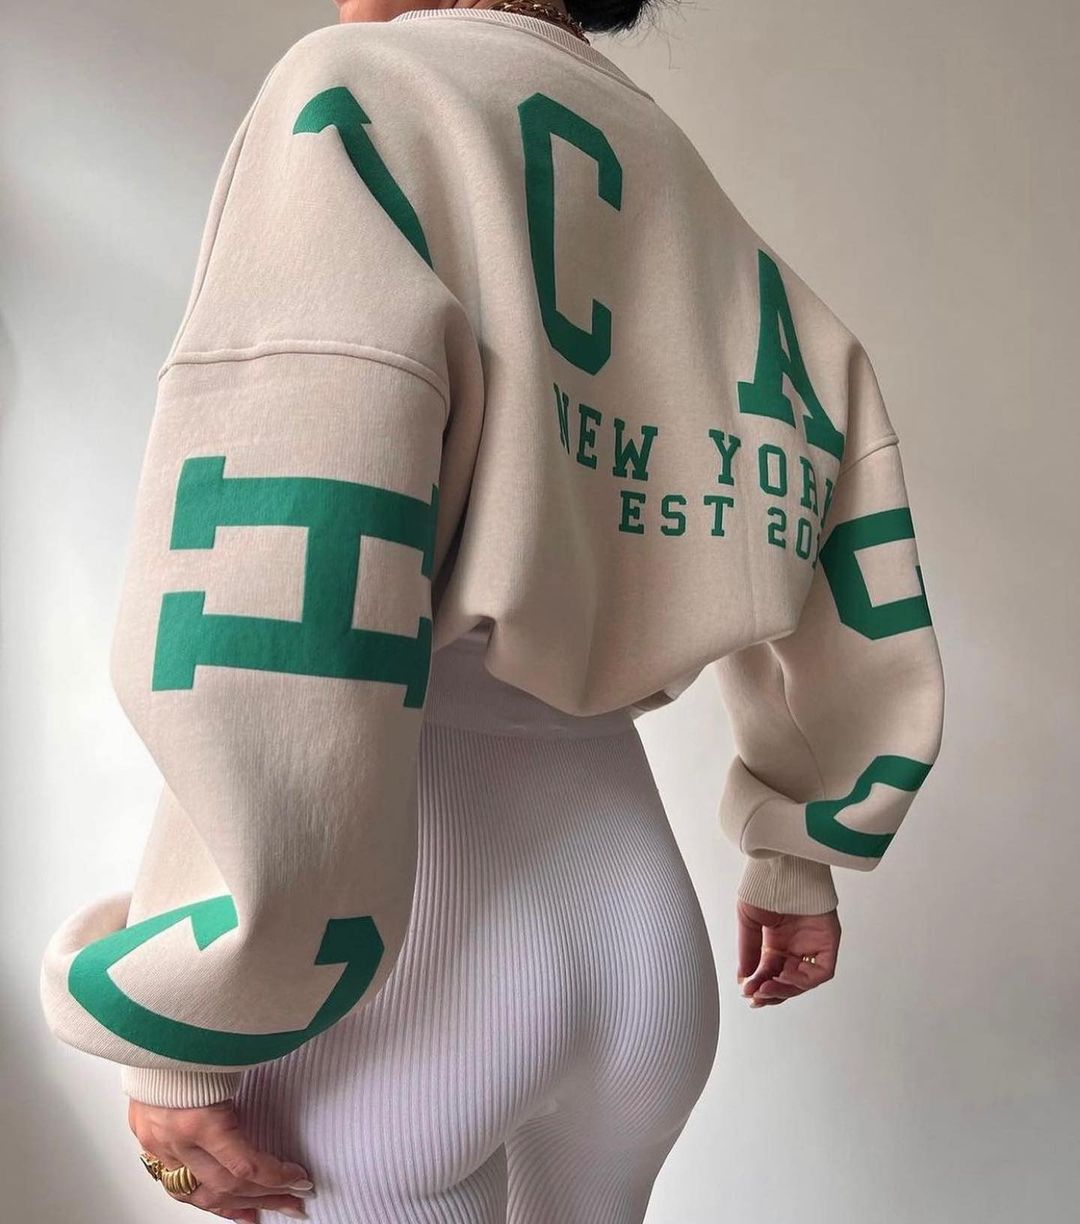 Women Letter Printed Hooded Pullover Casual Tops Sweatshirt Loose Long  Sleeve Sports Gym Hoodies, Fruugo Ie